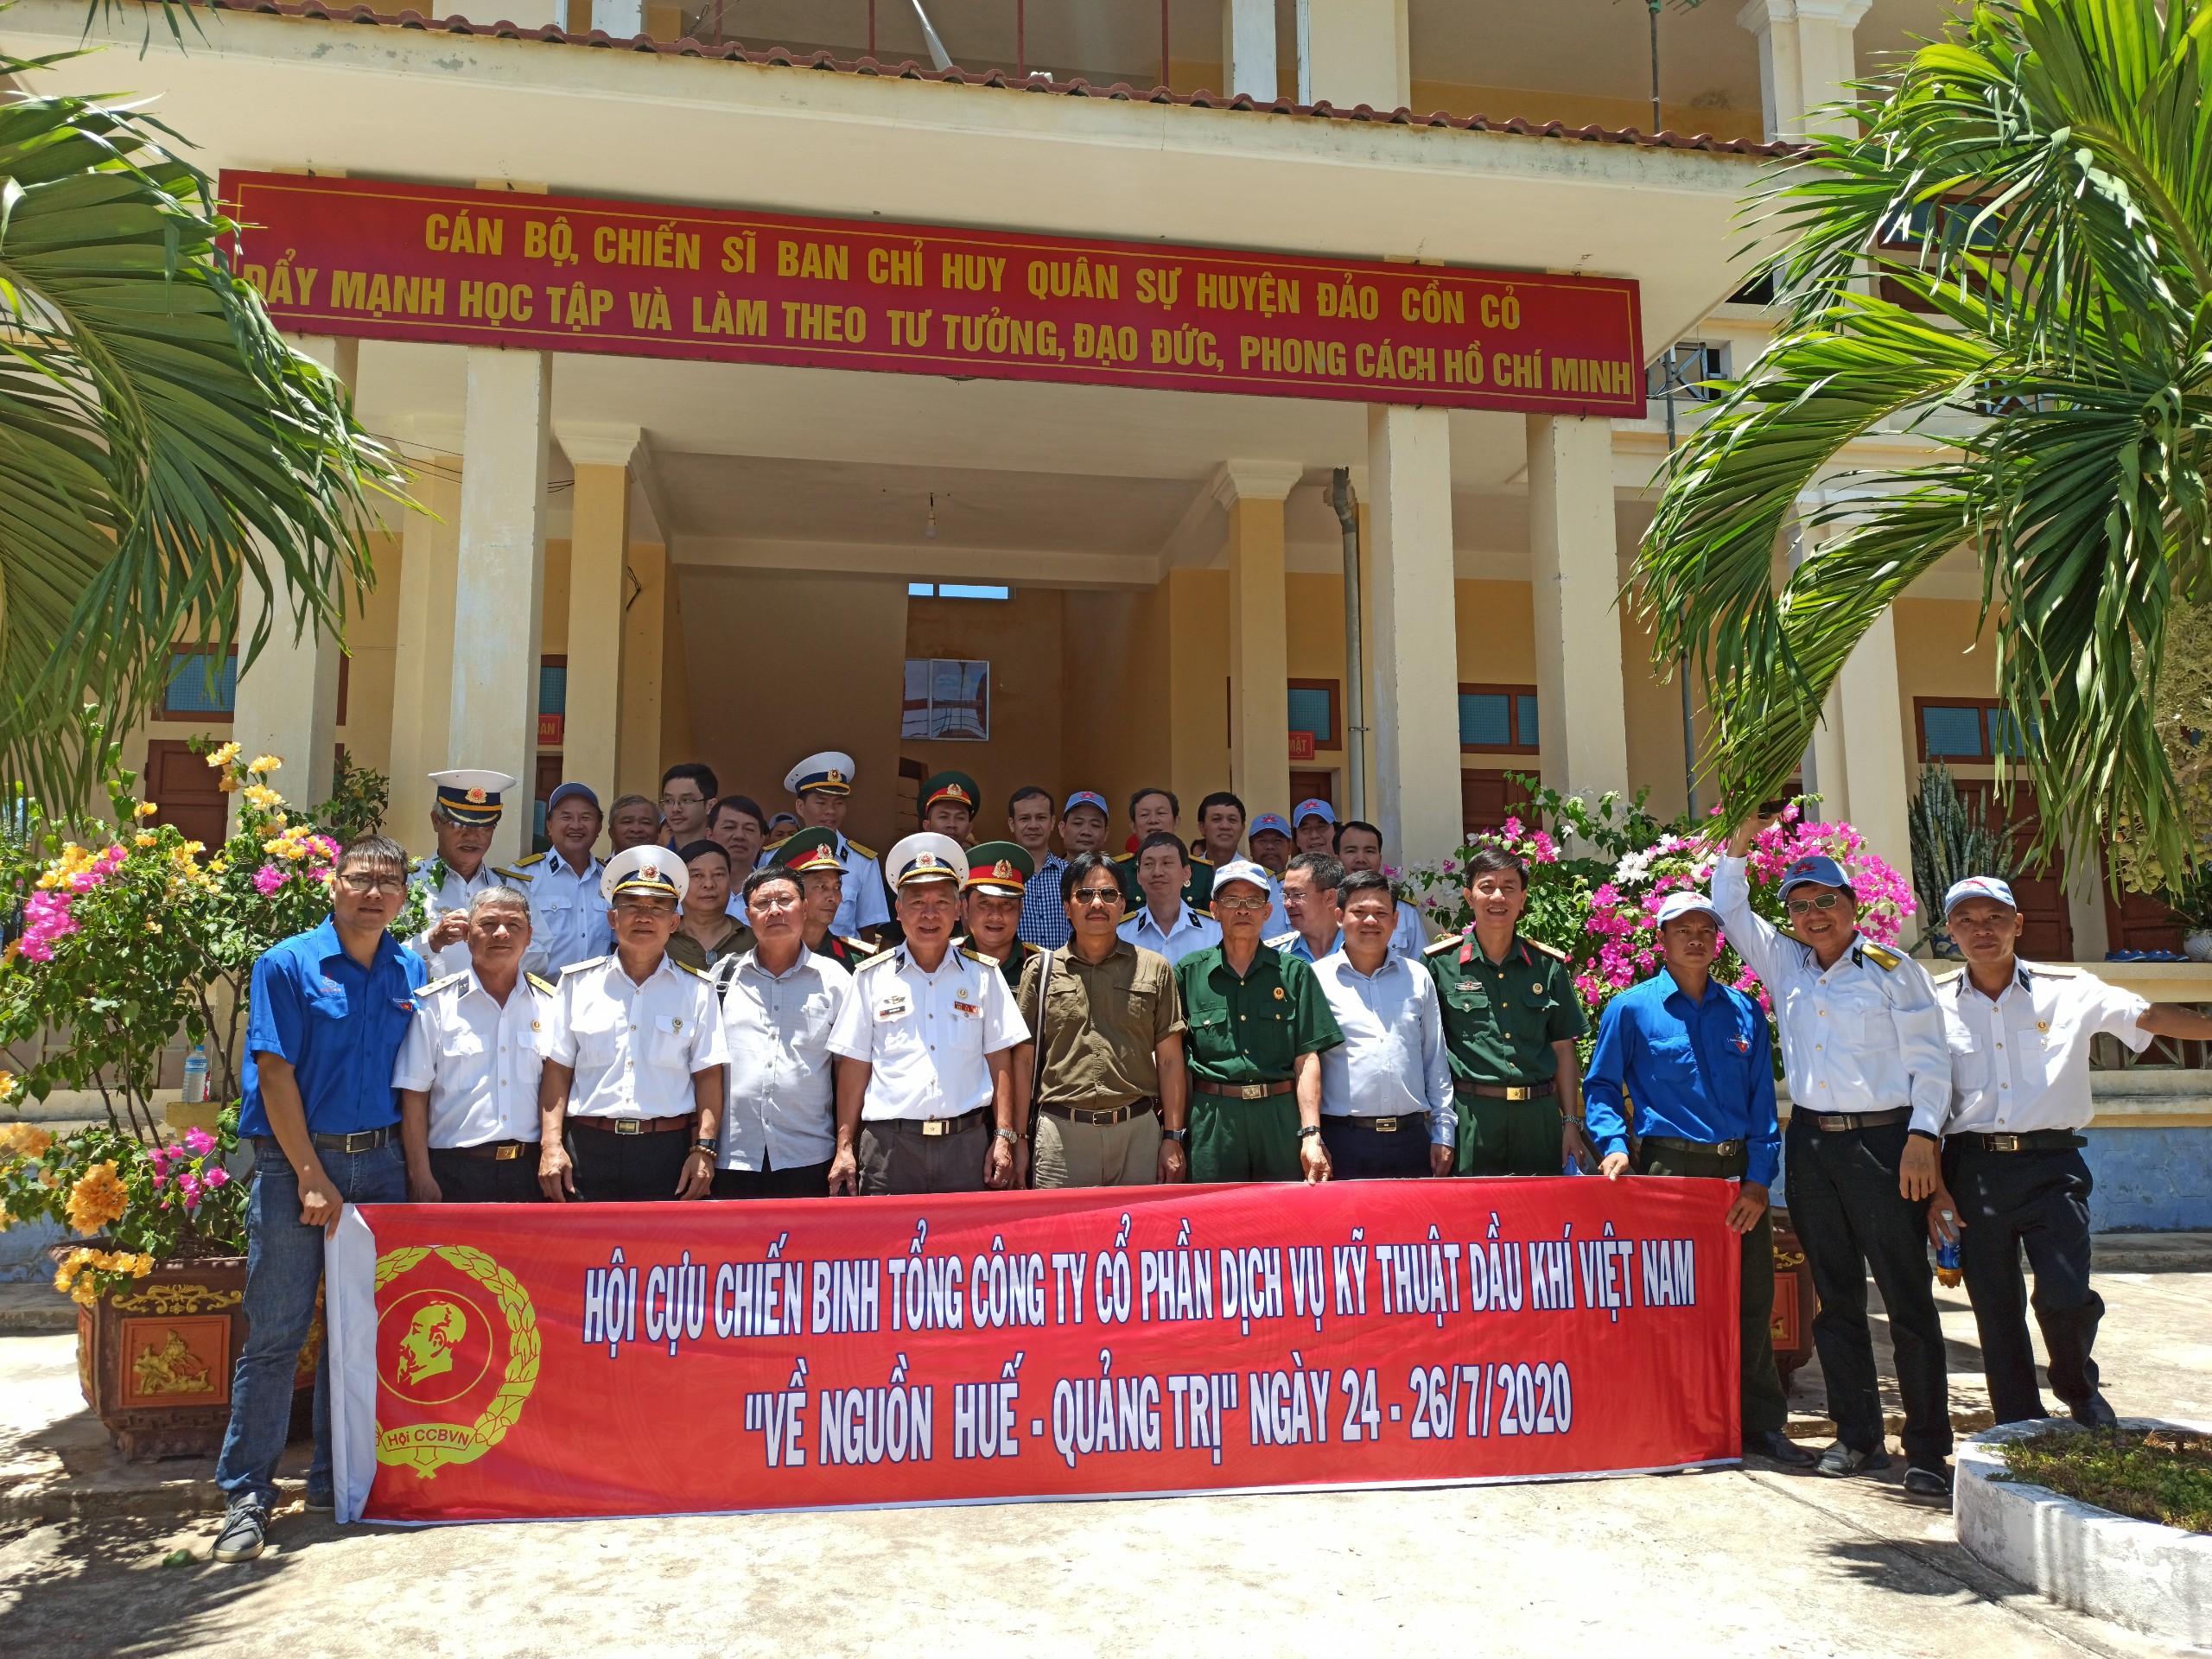 Đoàn thăm Ban CHQS huyện đảo Cồn Cỏ